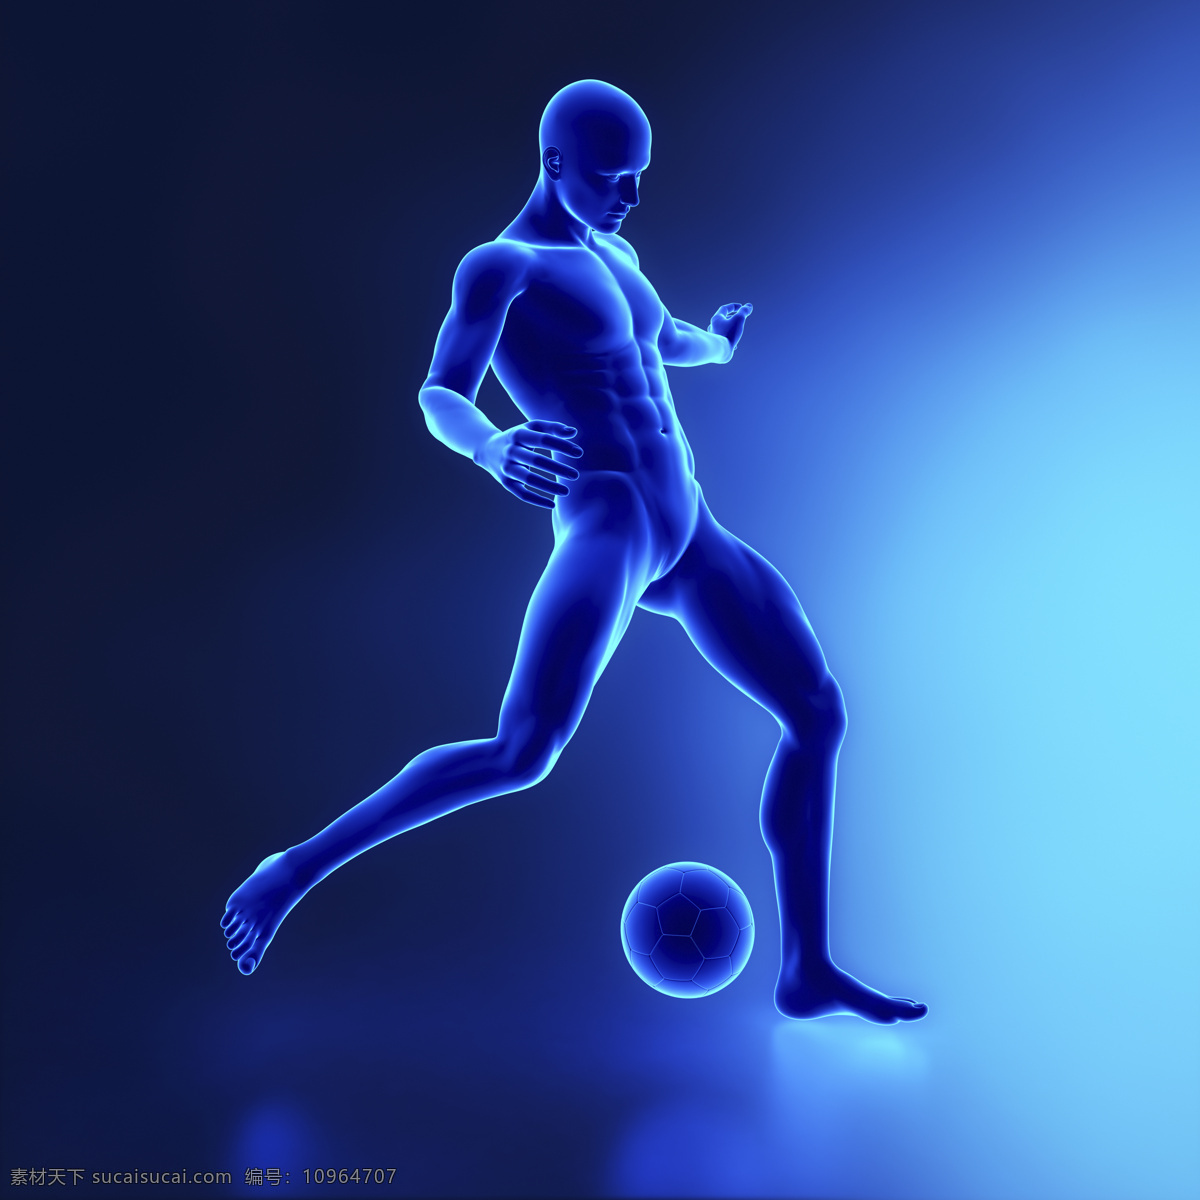 踢 足球 男性 人体 男性人体器官 医疗科学 医学 人体器官图 人物图片